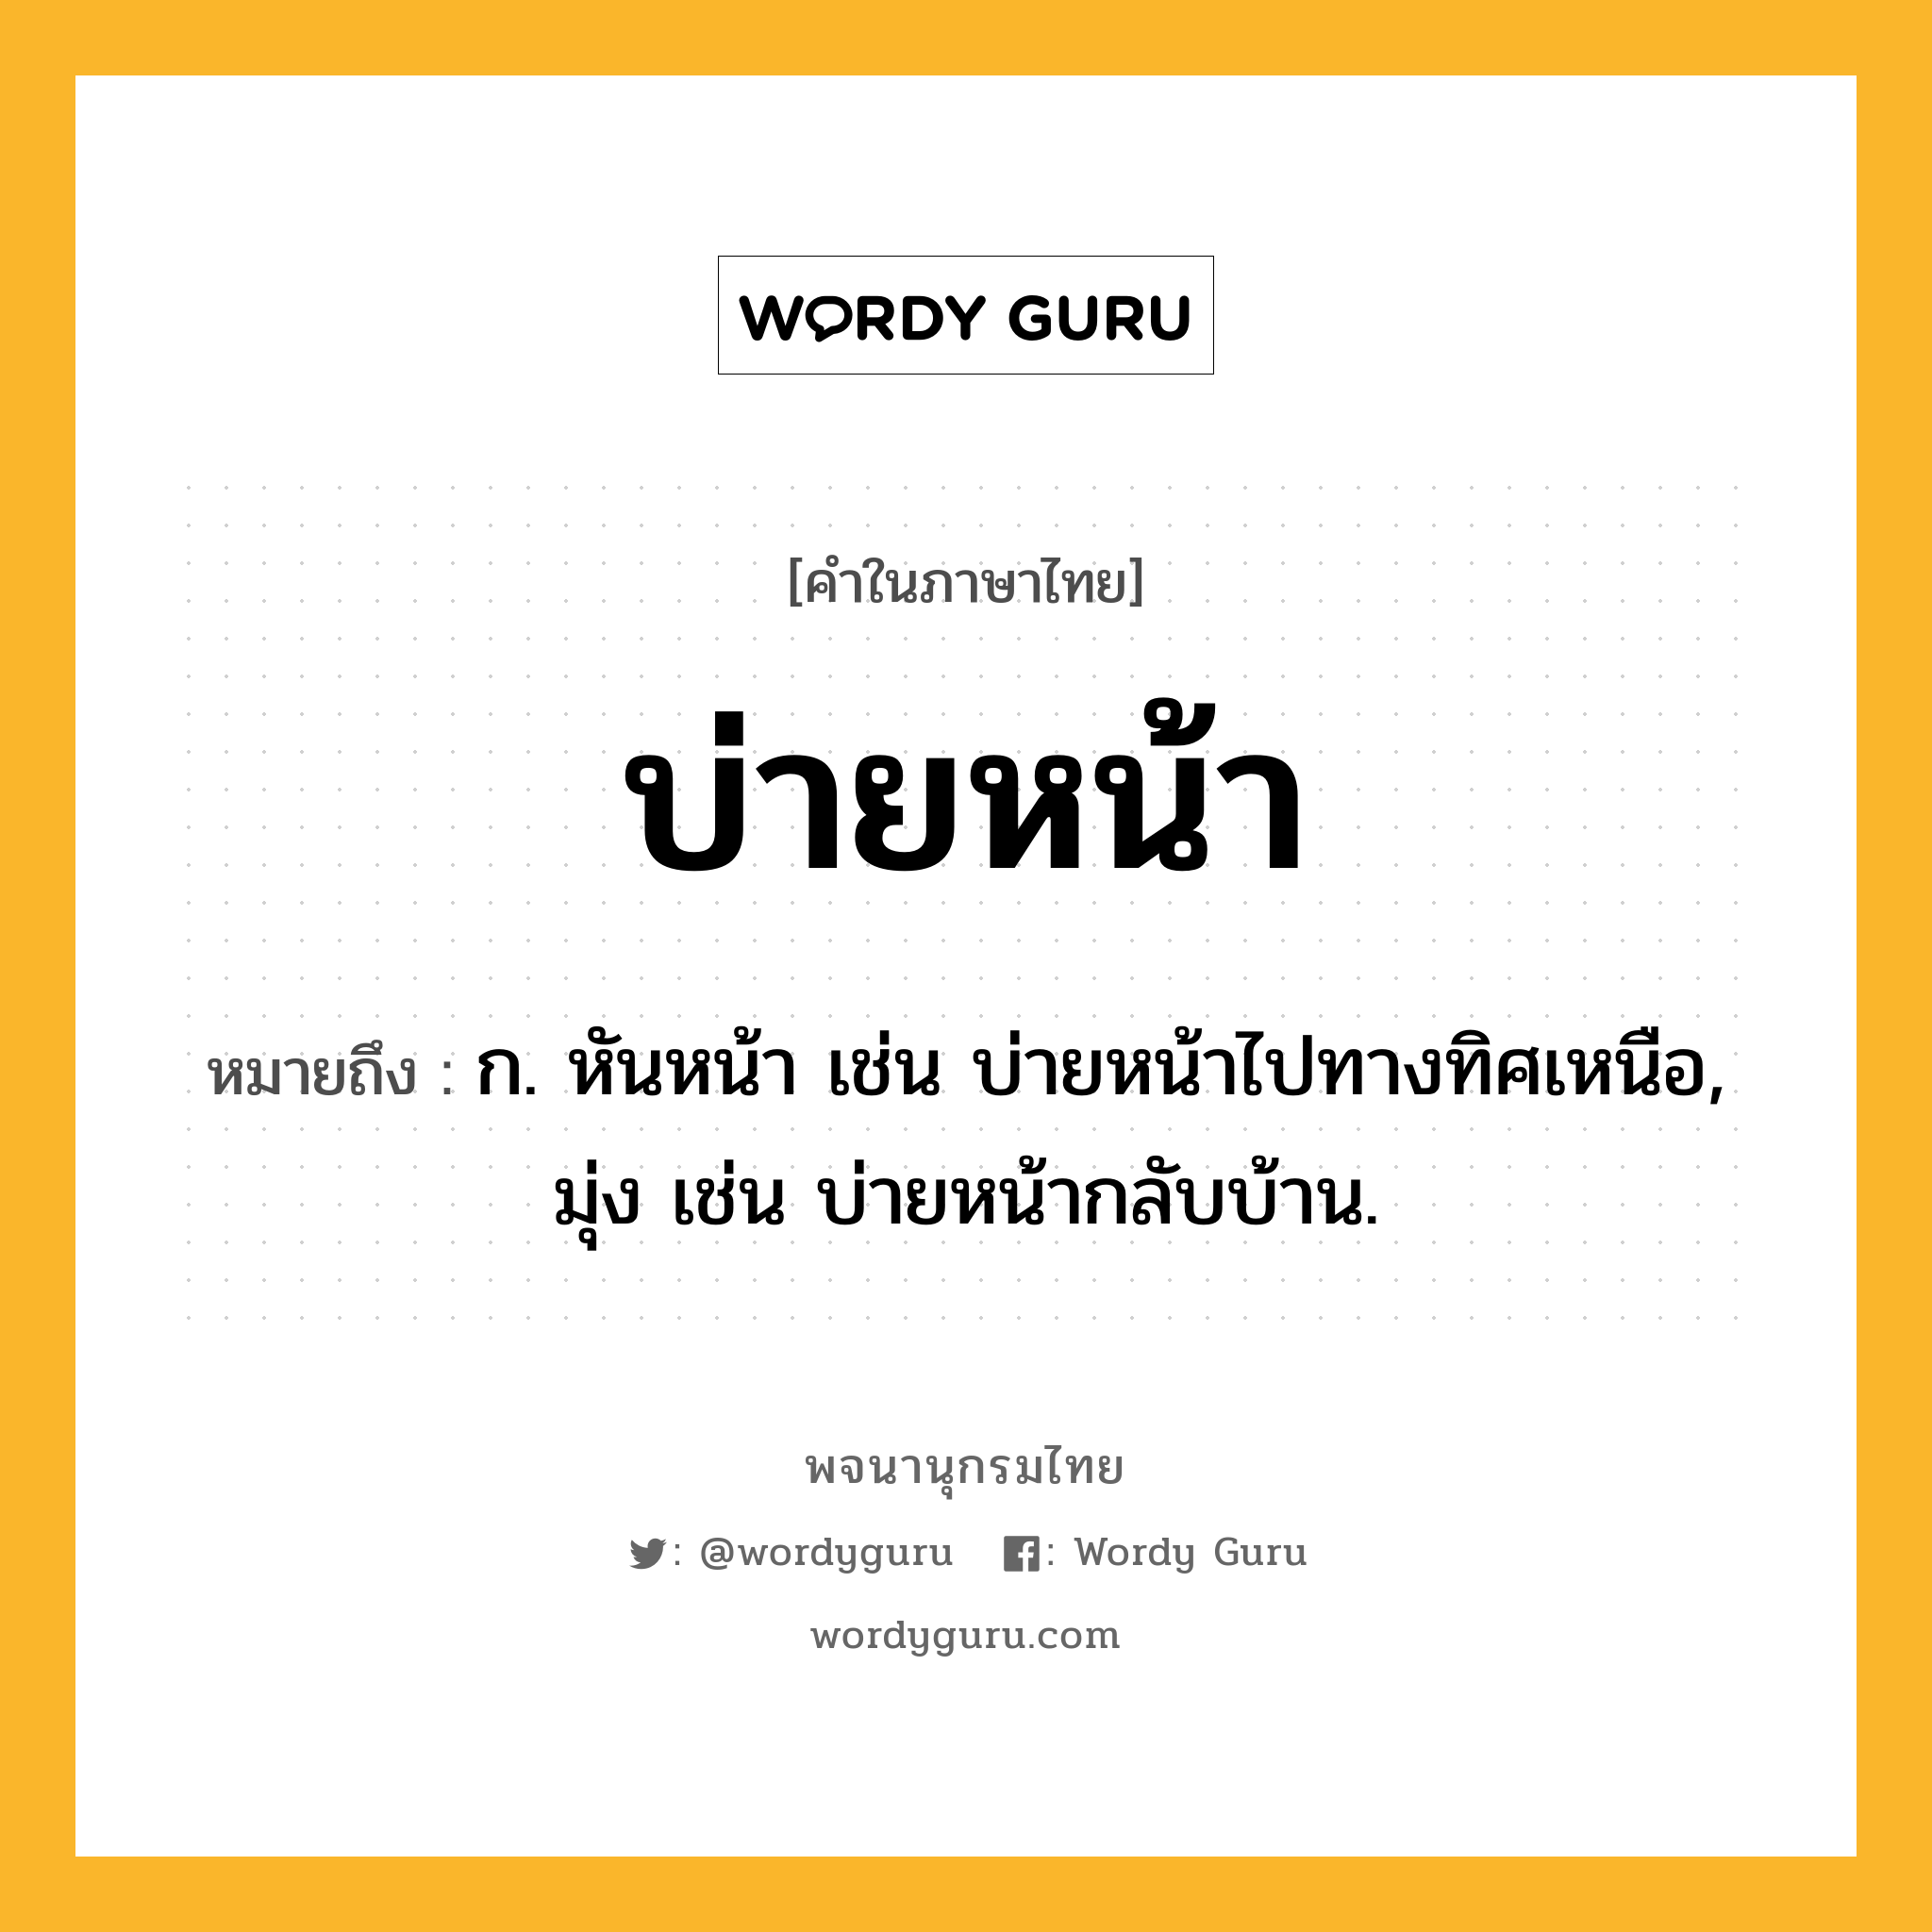 บ่ายหน้า หมายถึงอะไร?, คำในภาษาไทย บ่ายหน้า หมายถึง ก. หันหน้า เช่น บ่ายหน้าไปทางทิศเหนือ, มุ่ง เช่น บ่ายหน้ากลับบ้าน.